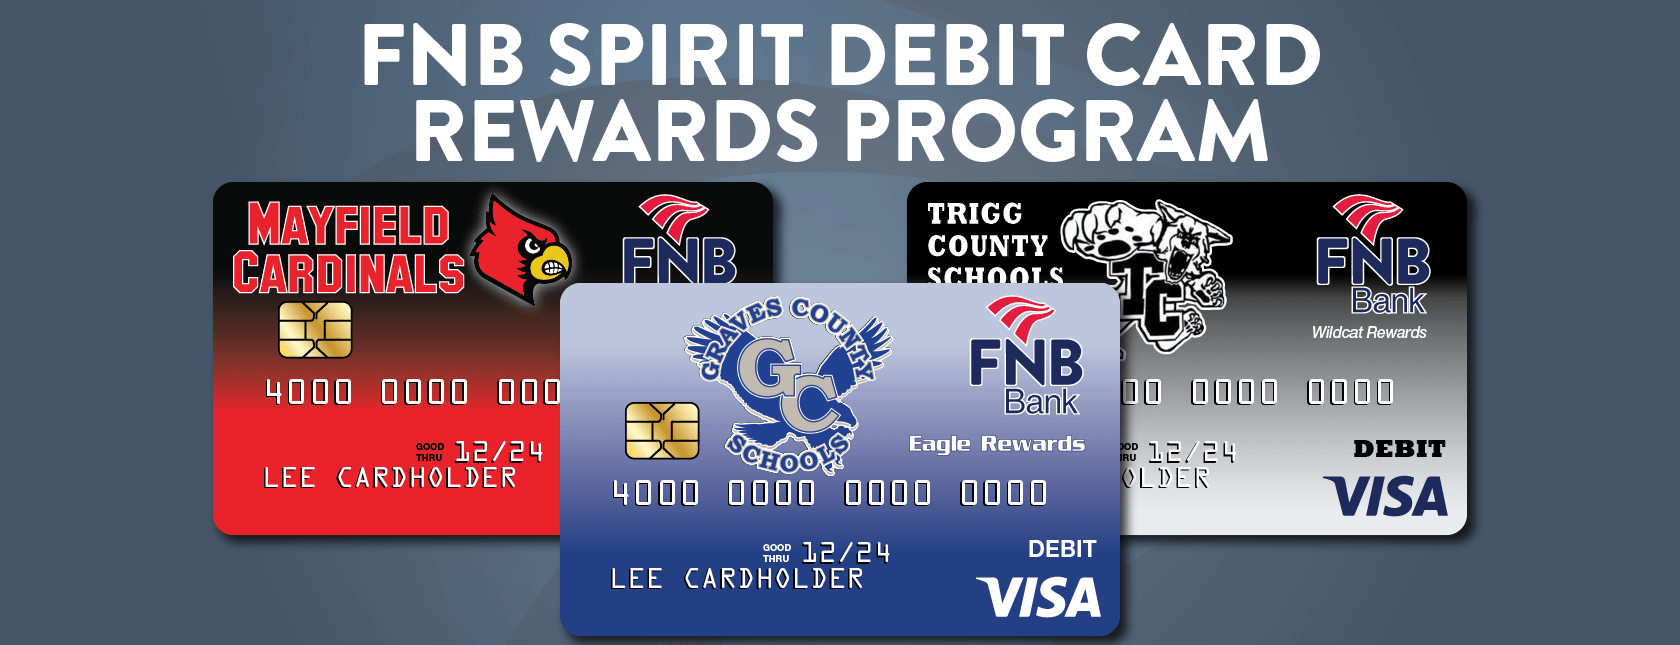 FNB Spirit Debit Card Graphic